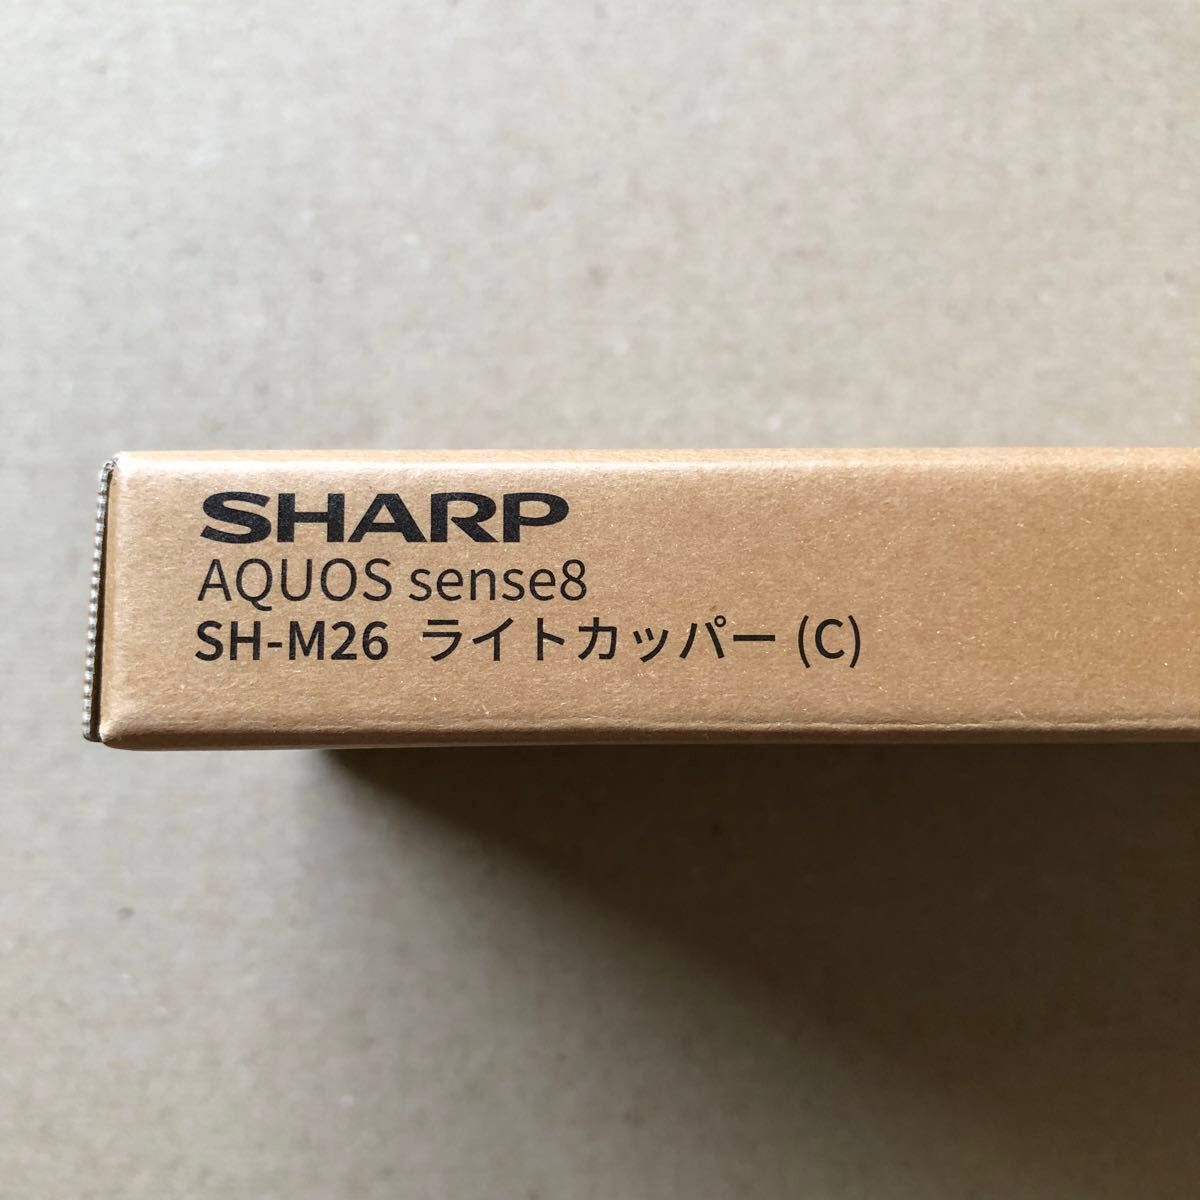 SHARP AQUOS sense8 ライトカッパー SH-M26 シャープ アクオス センス8 未使用